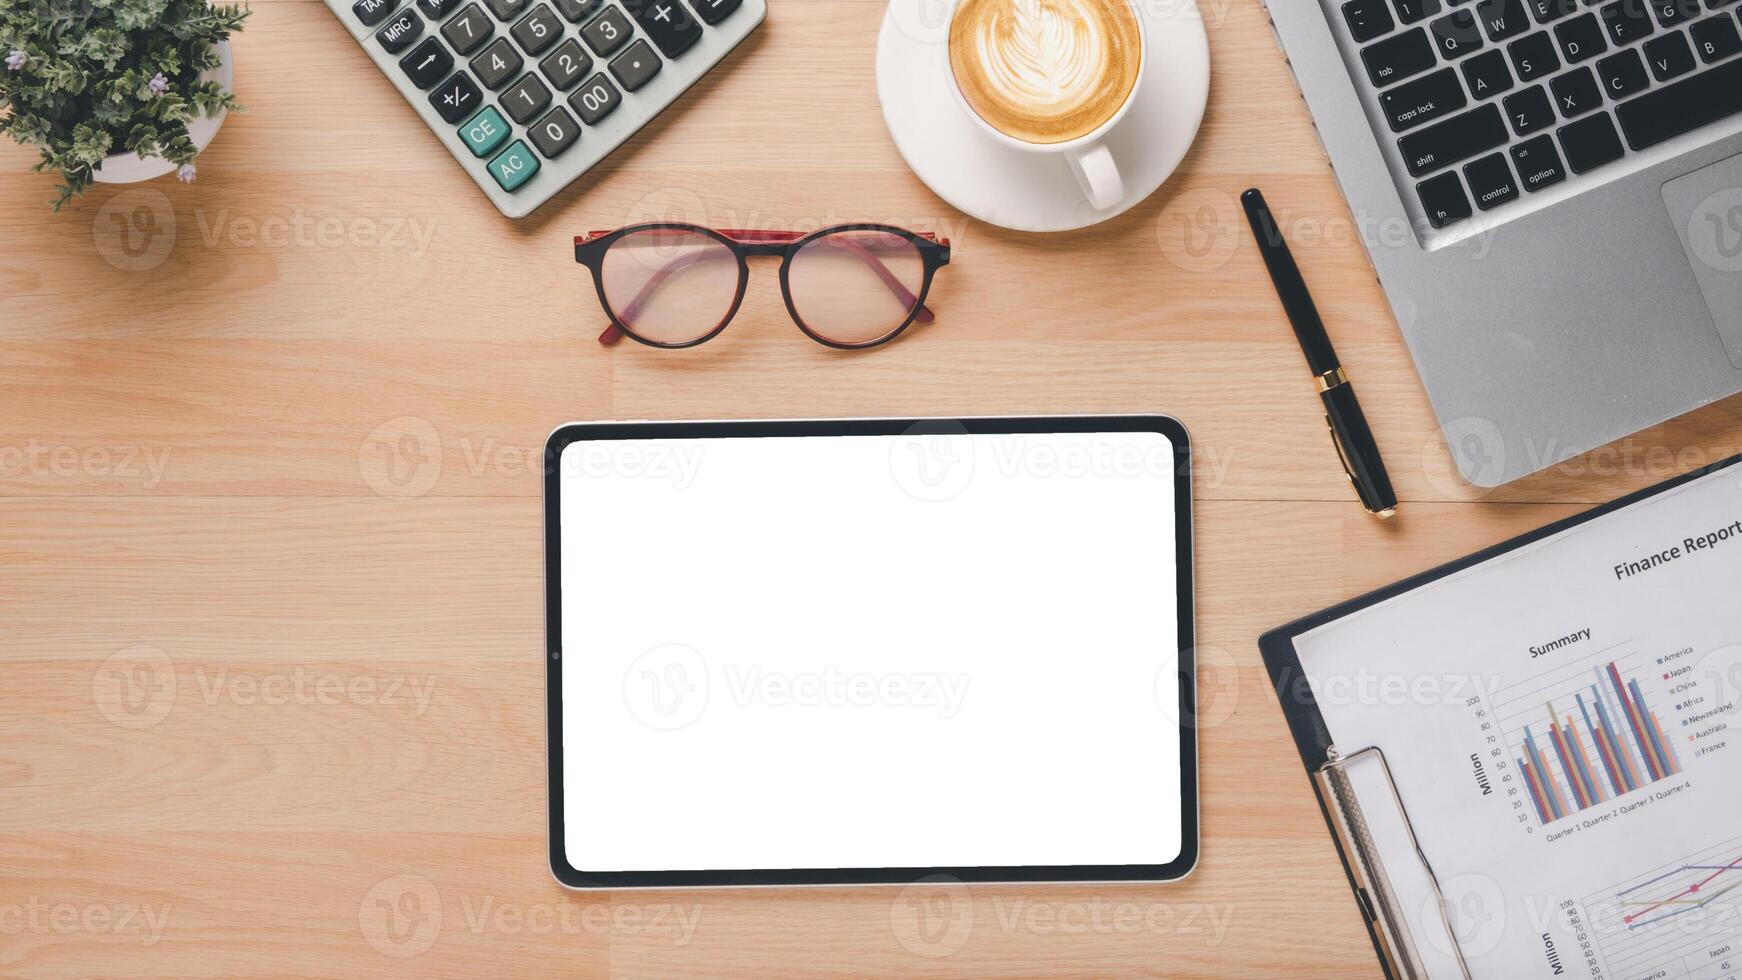 Haut vue de une professionnel espace de travail avec une tablette avec une Vide filtrer, ordinateur portable, financier rapports, calculatrice, et une tasse de café. photo